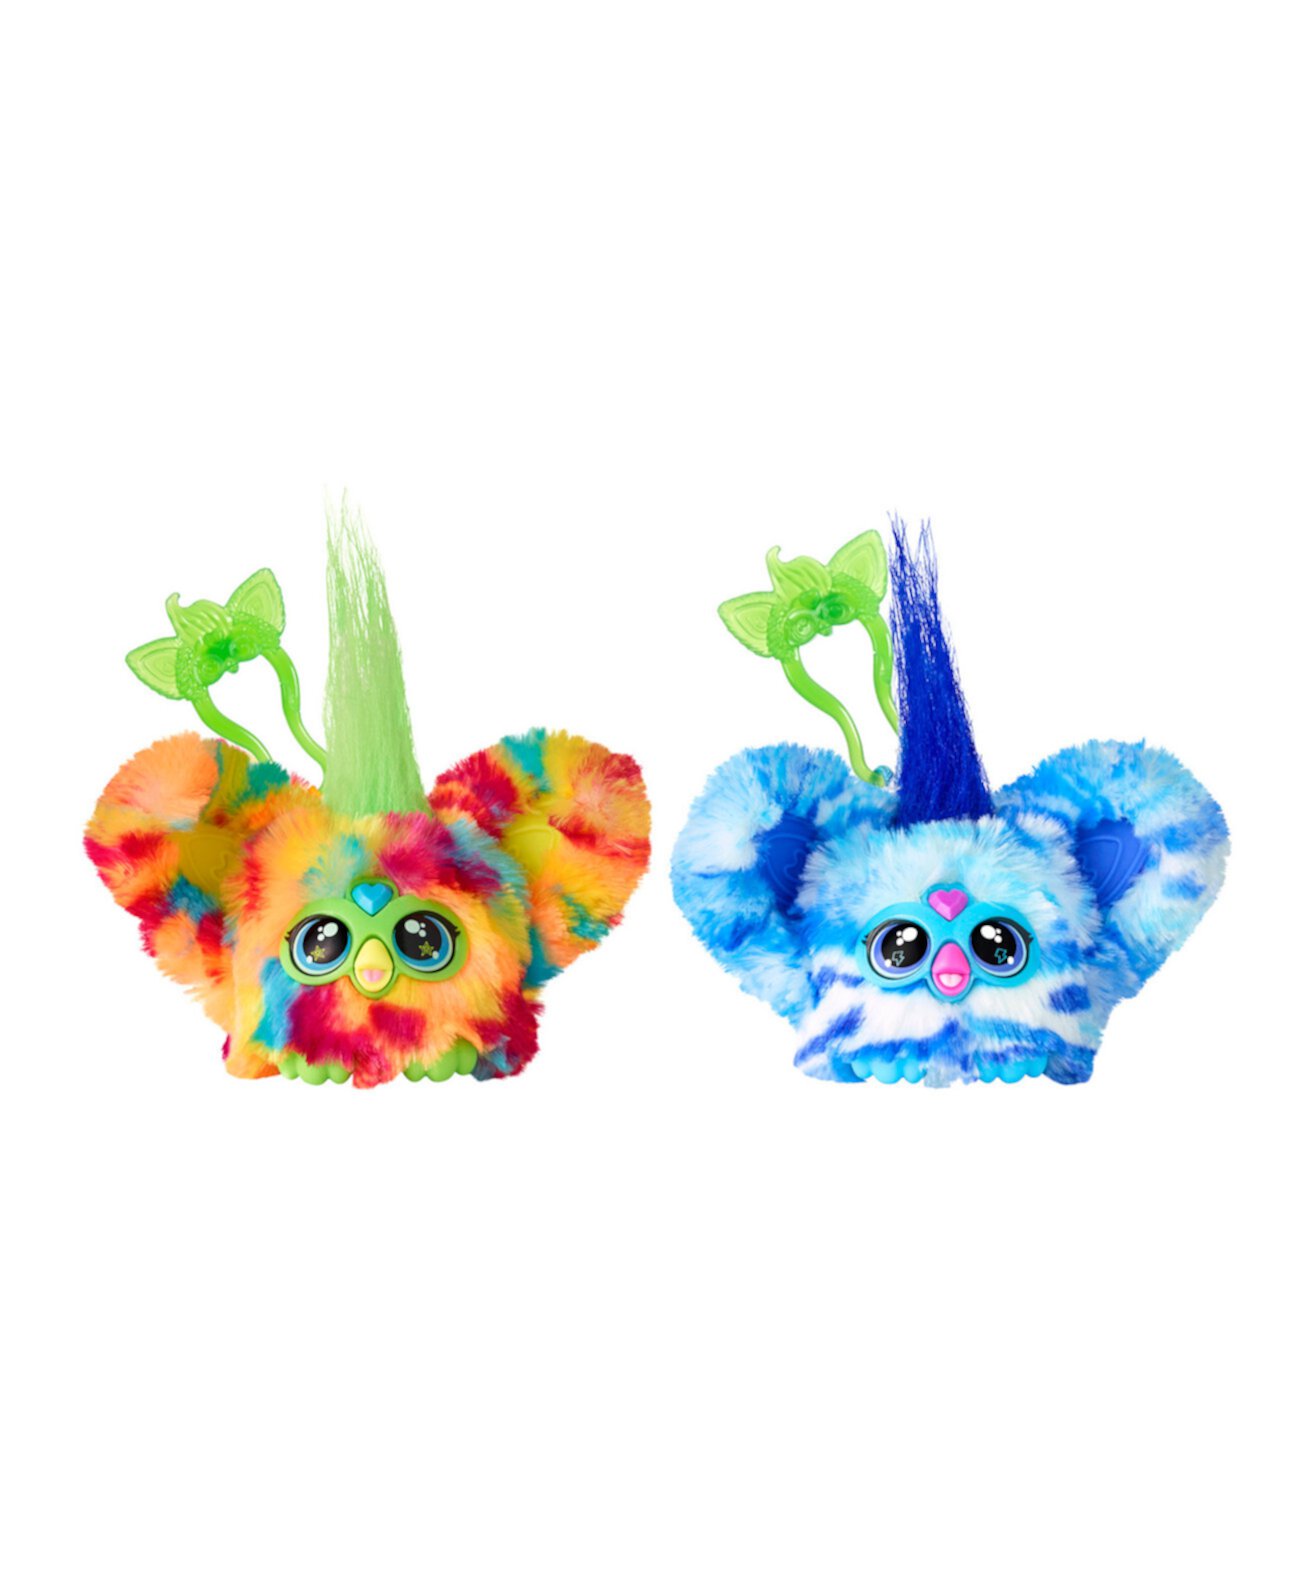 Мини-электронная плюшевая игрушка Furblets Pix-Elle Ooh-Koo из 2 штук для девочек и мальчиков от 6 лет Furby